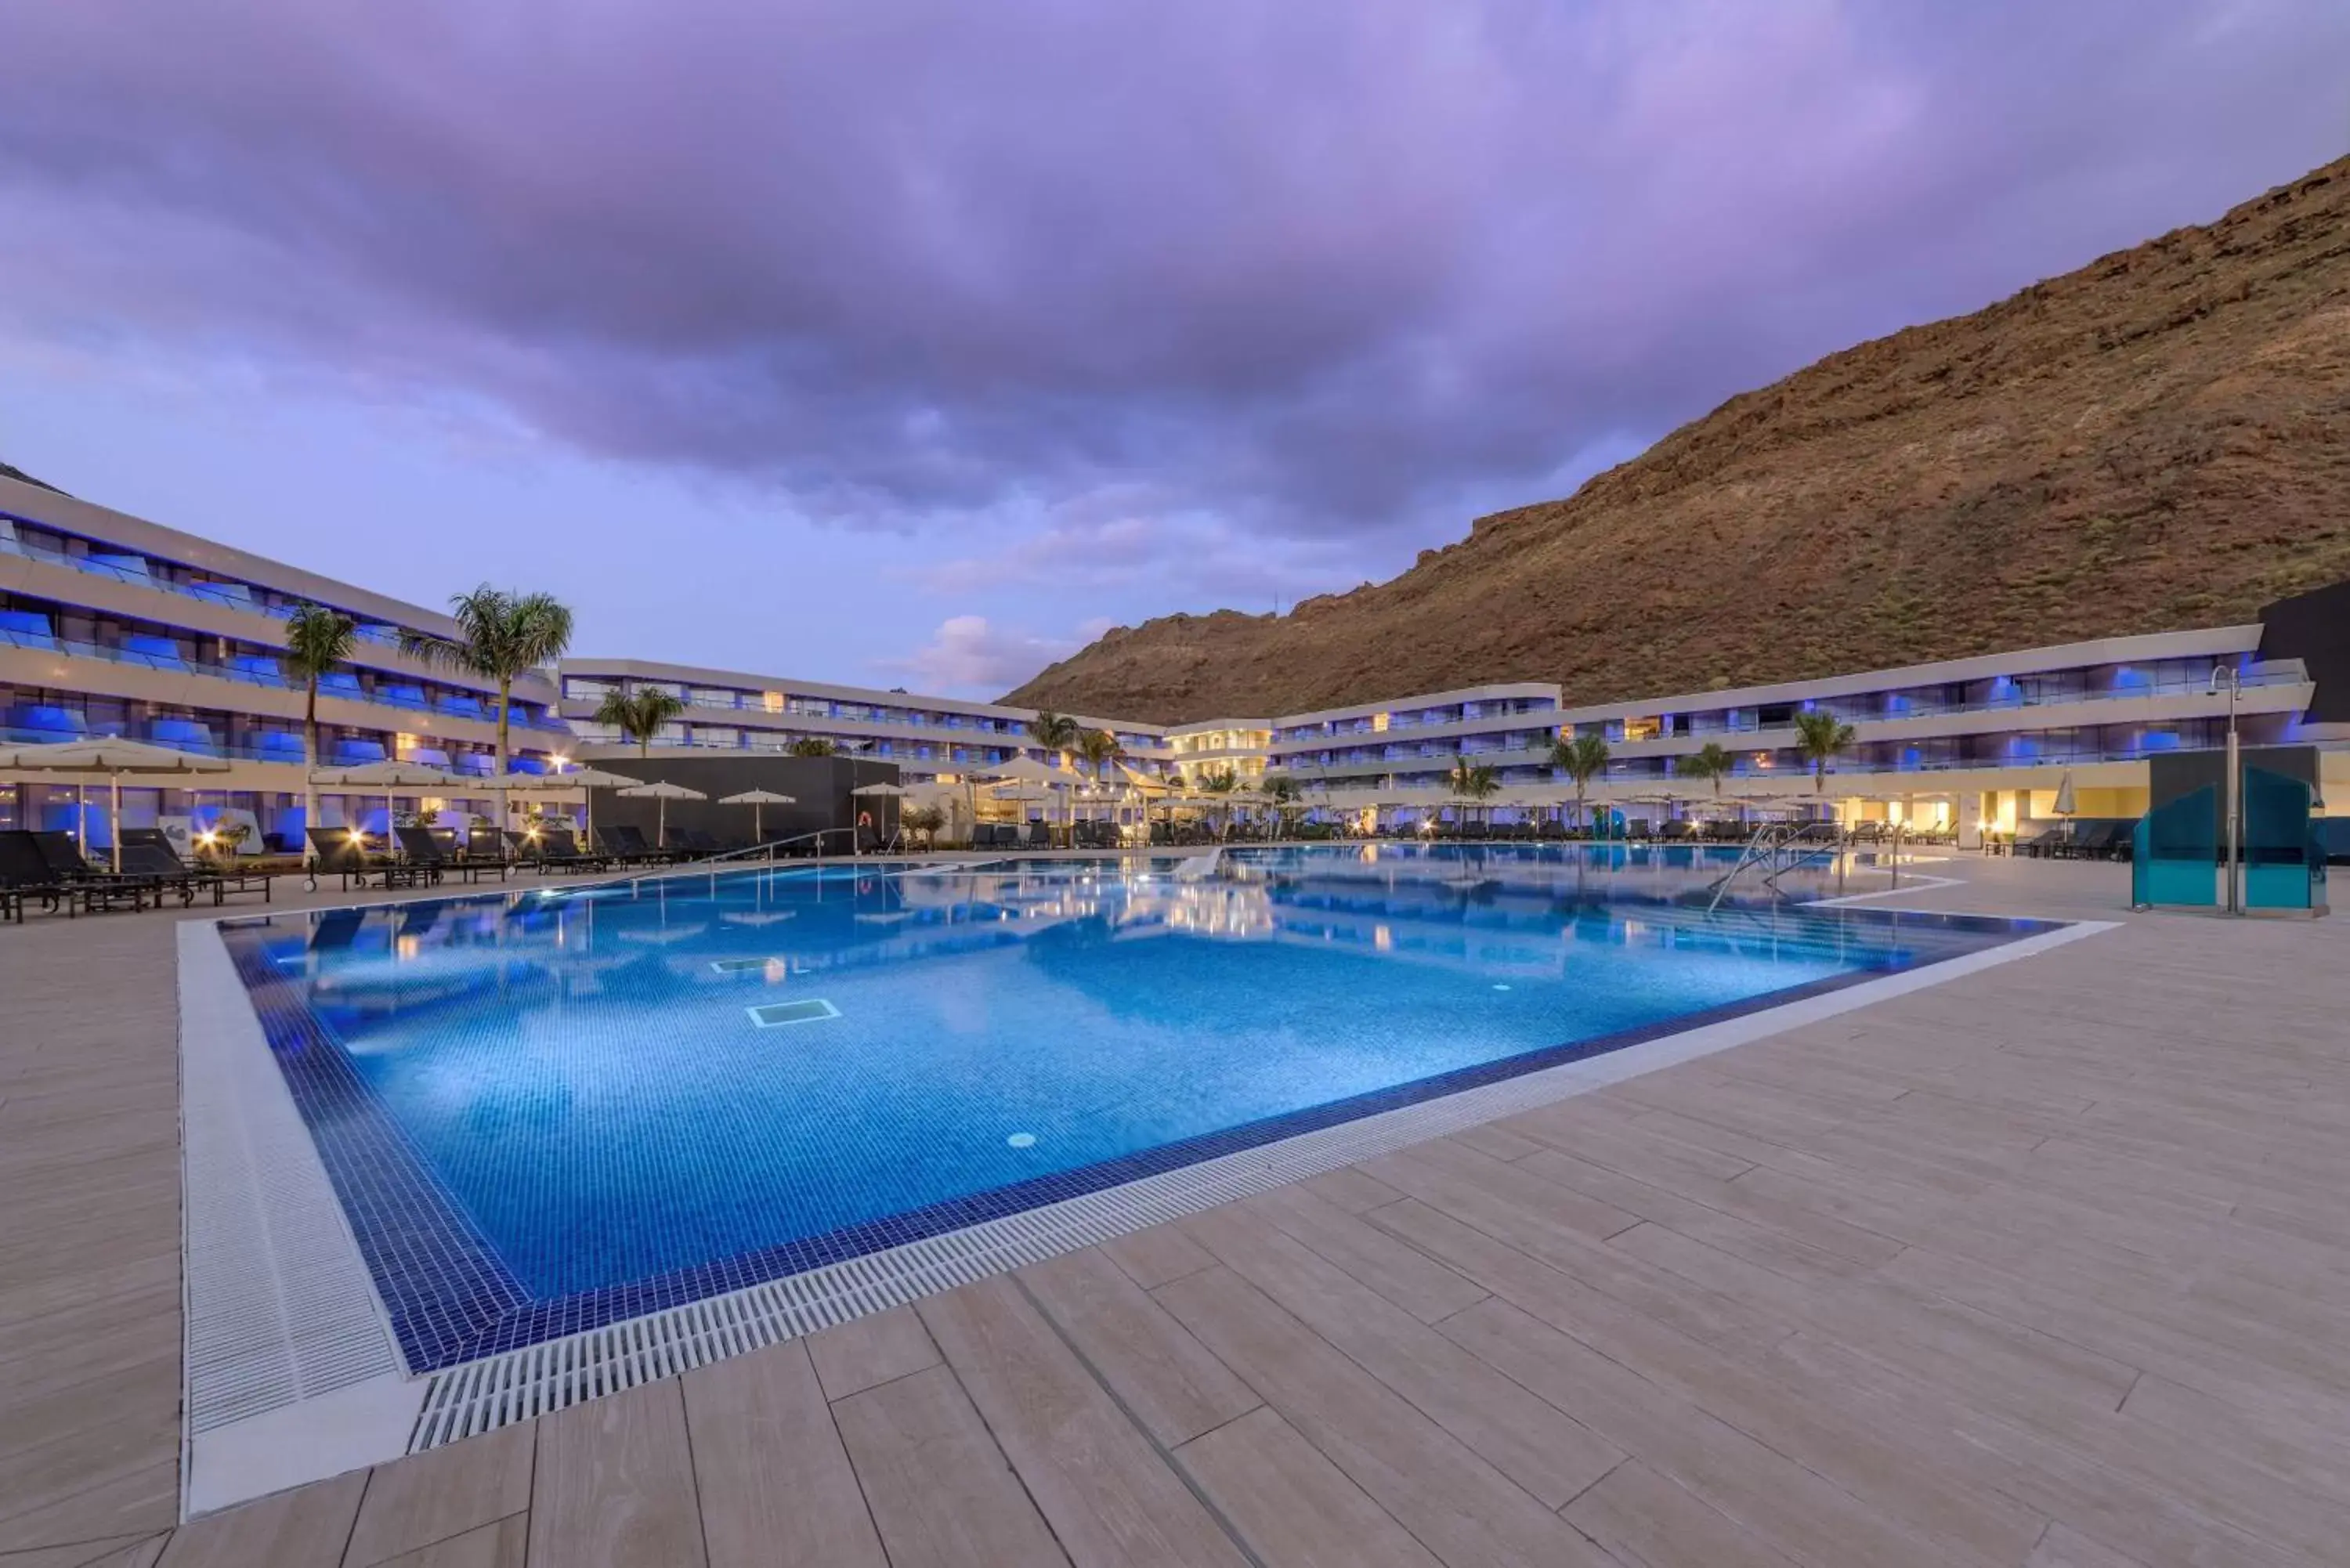 Activities, Swimming Pool in Radisson Blu Resort & Spa, Gran Canaria Mogan